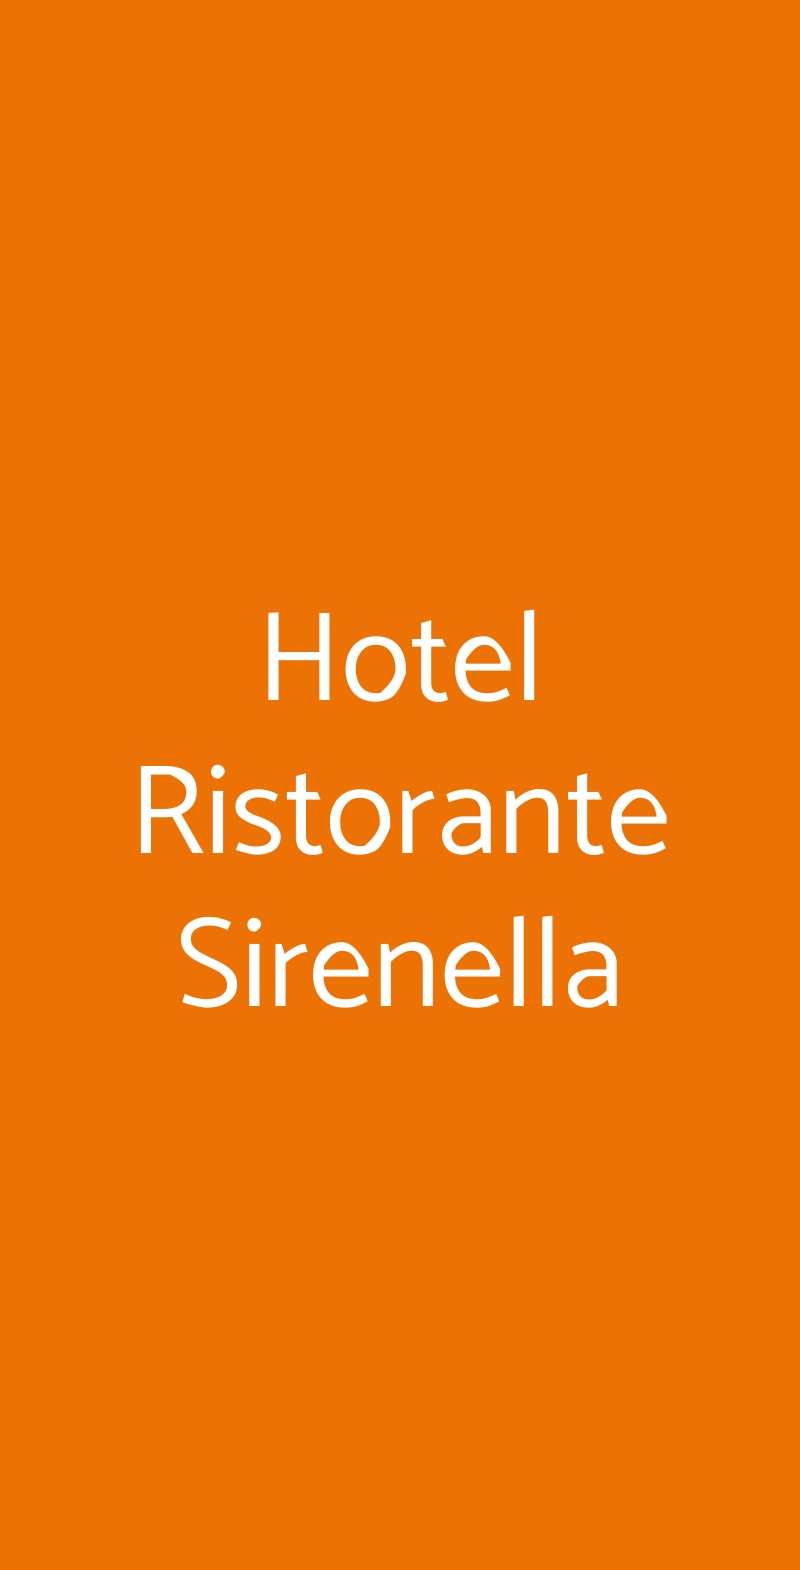 Hotel Ristorante Sirenella Genova menù 1 pagina